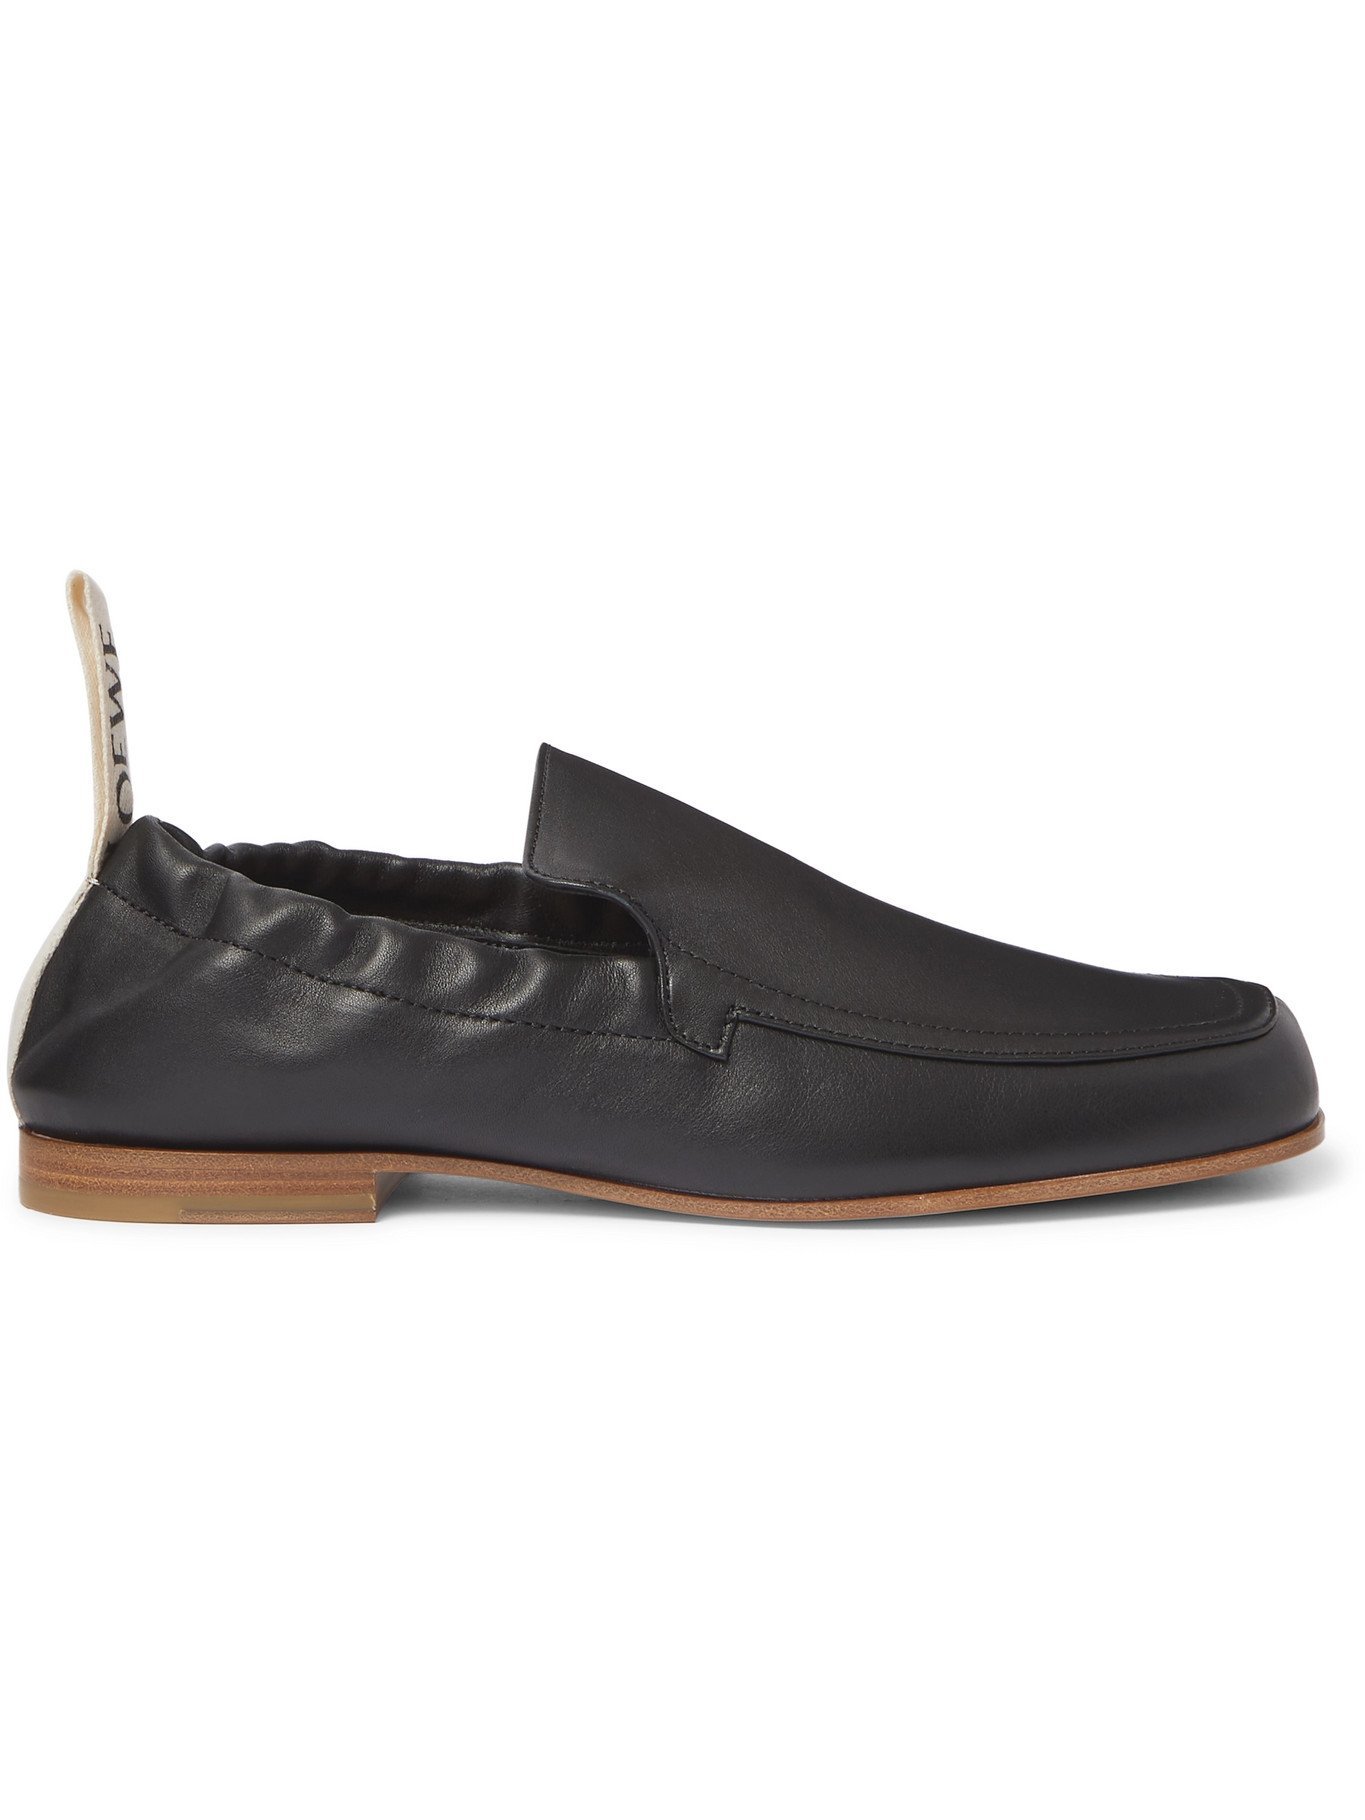 LOEWE - Grosgrain-Trimmed Leather Loafers - Black Loewe